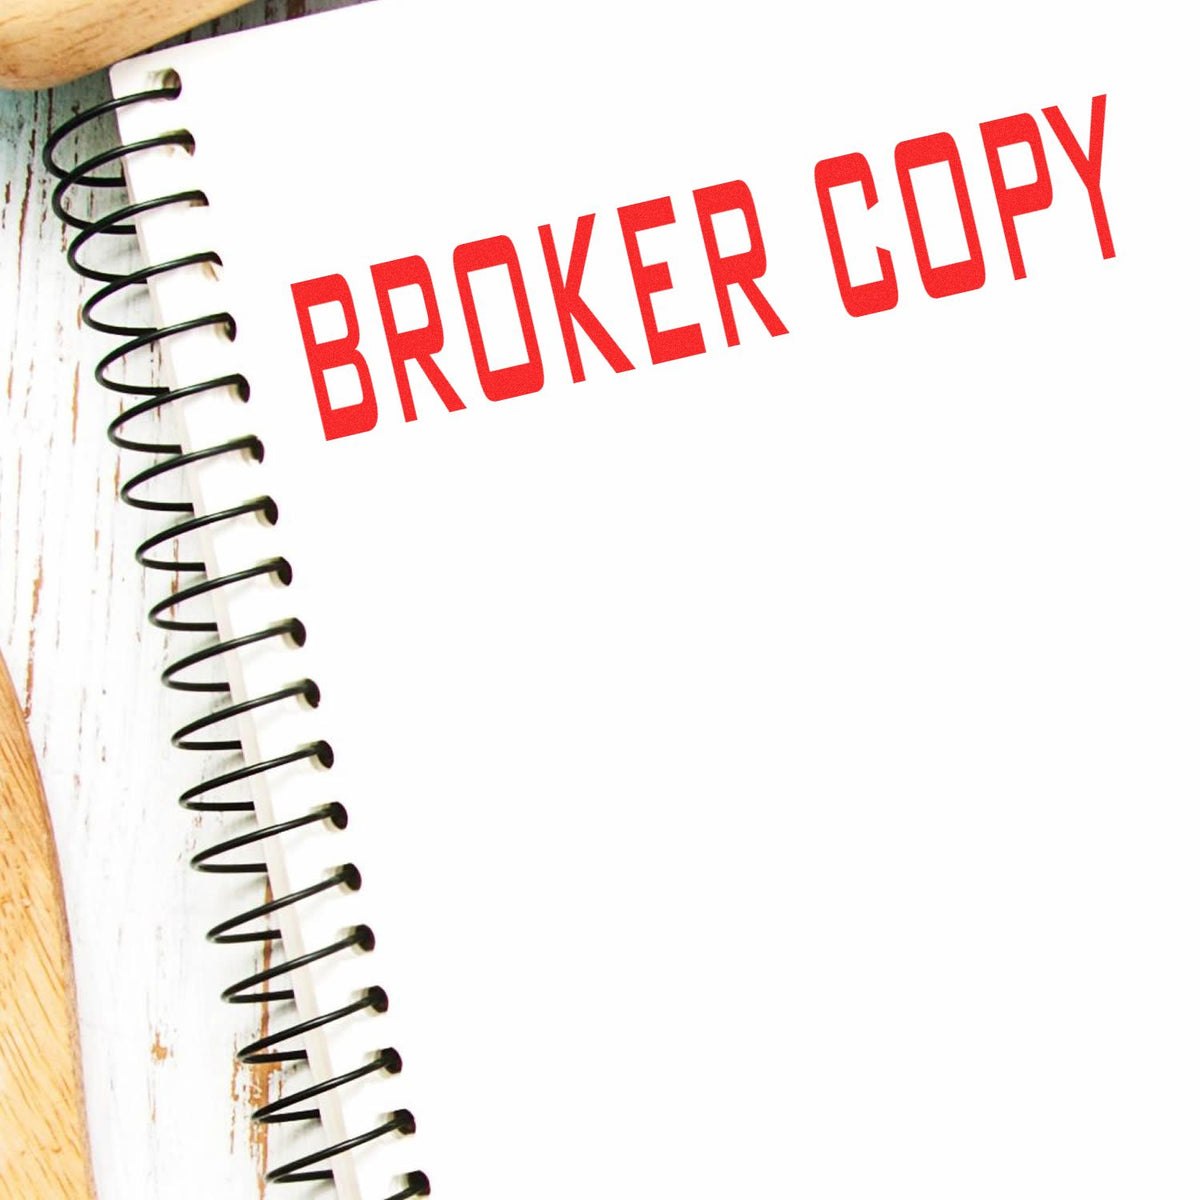 Slim Pre-Inked Broker Copy Stamp In Use Photo